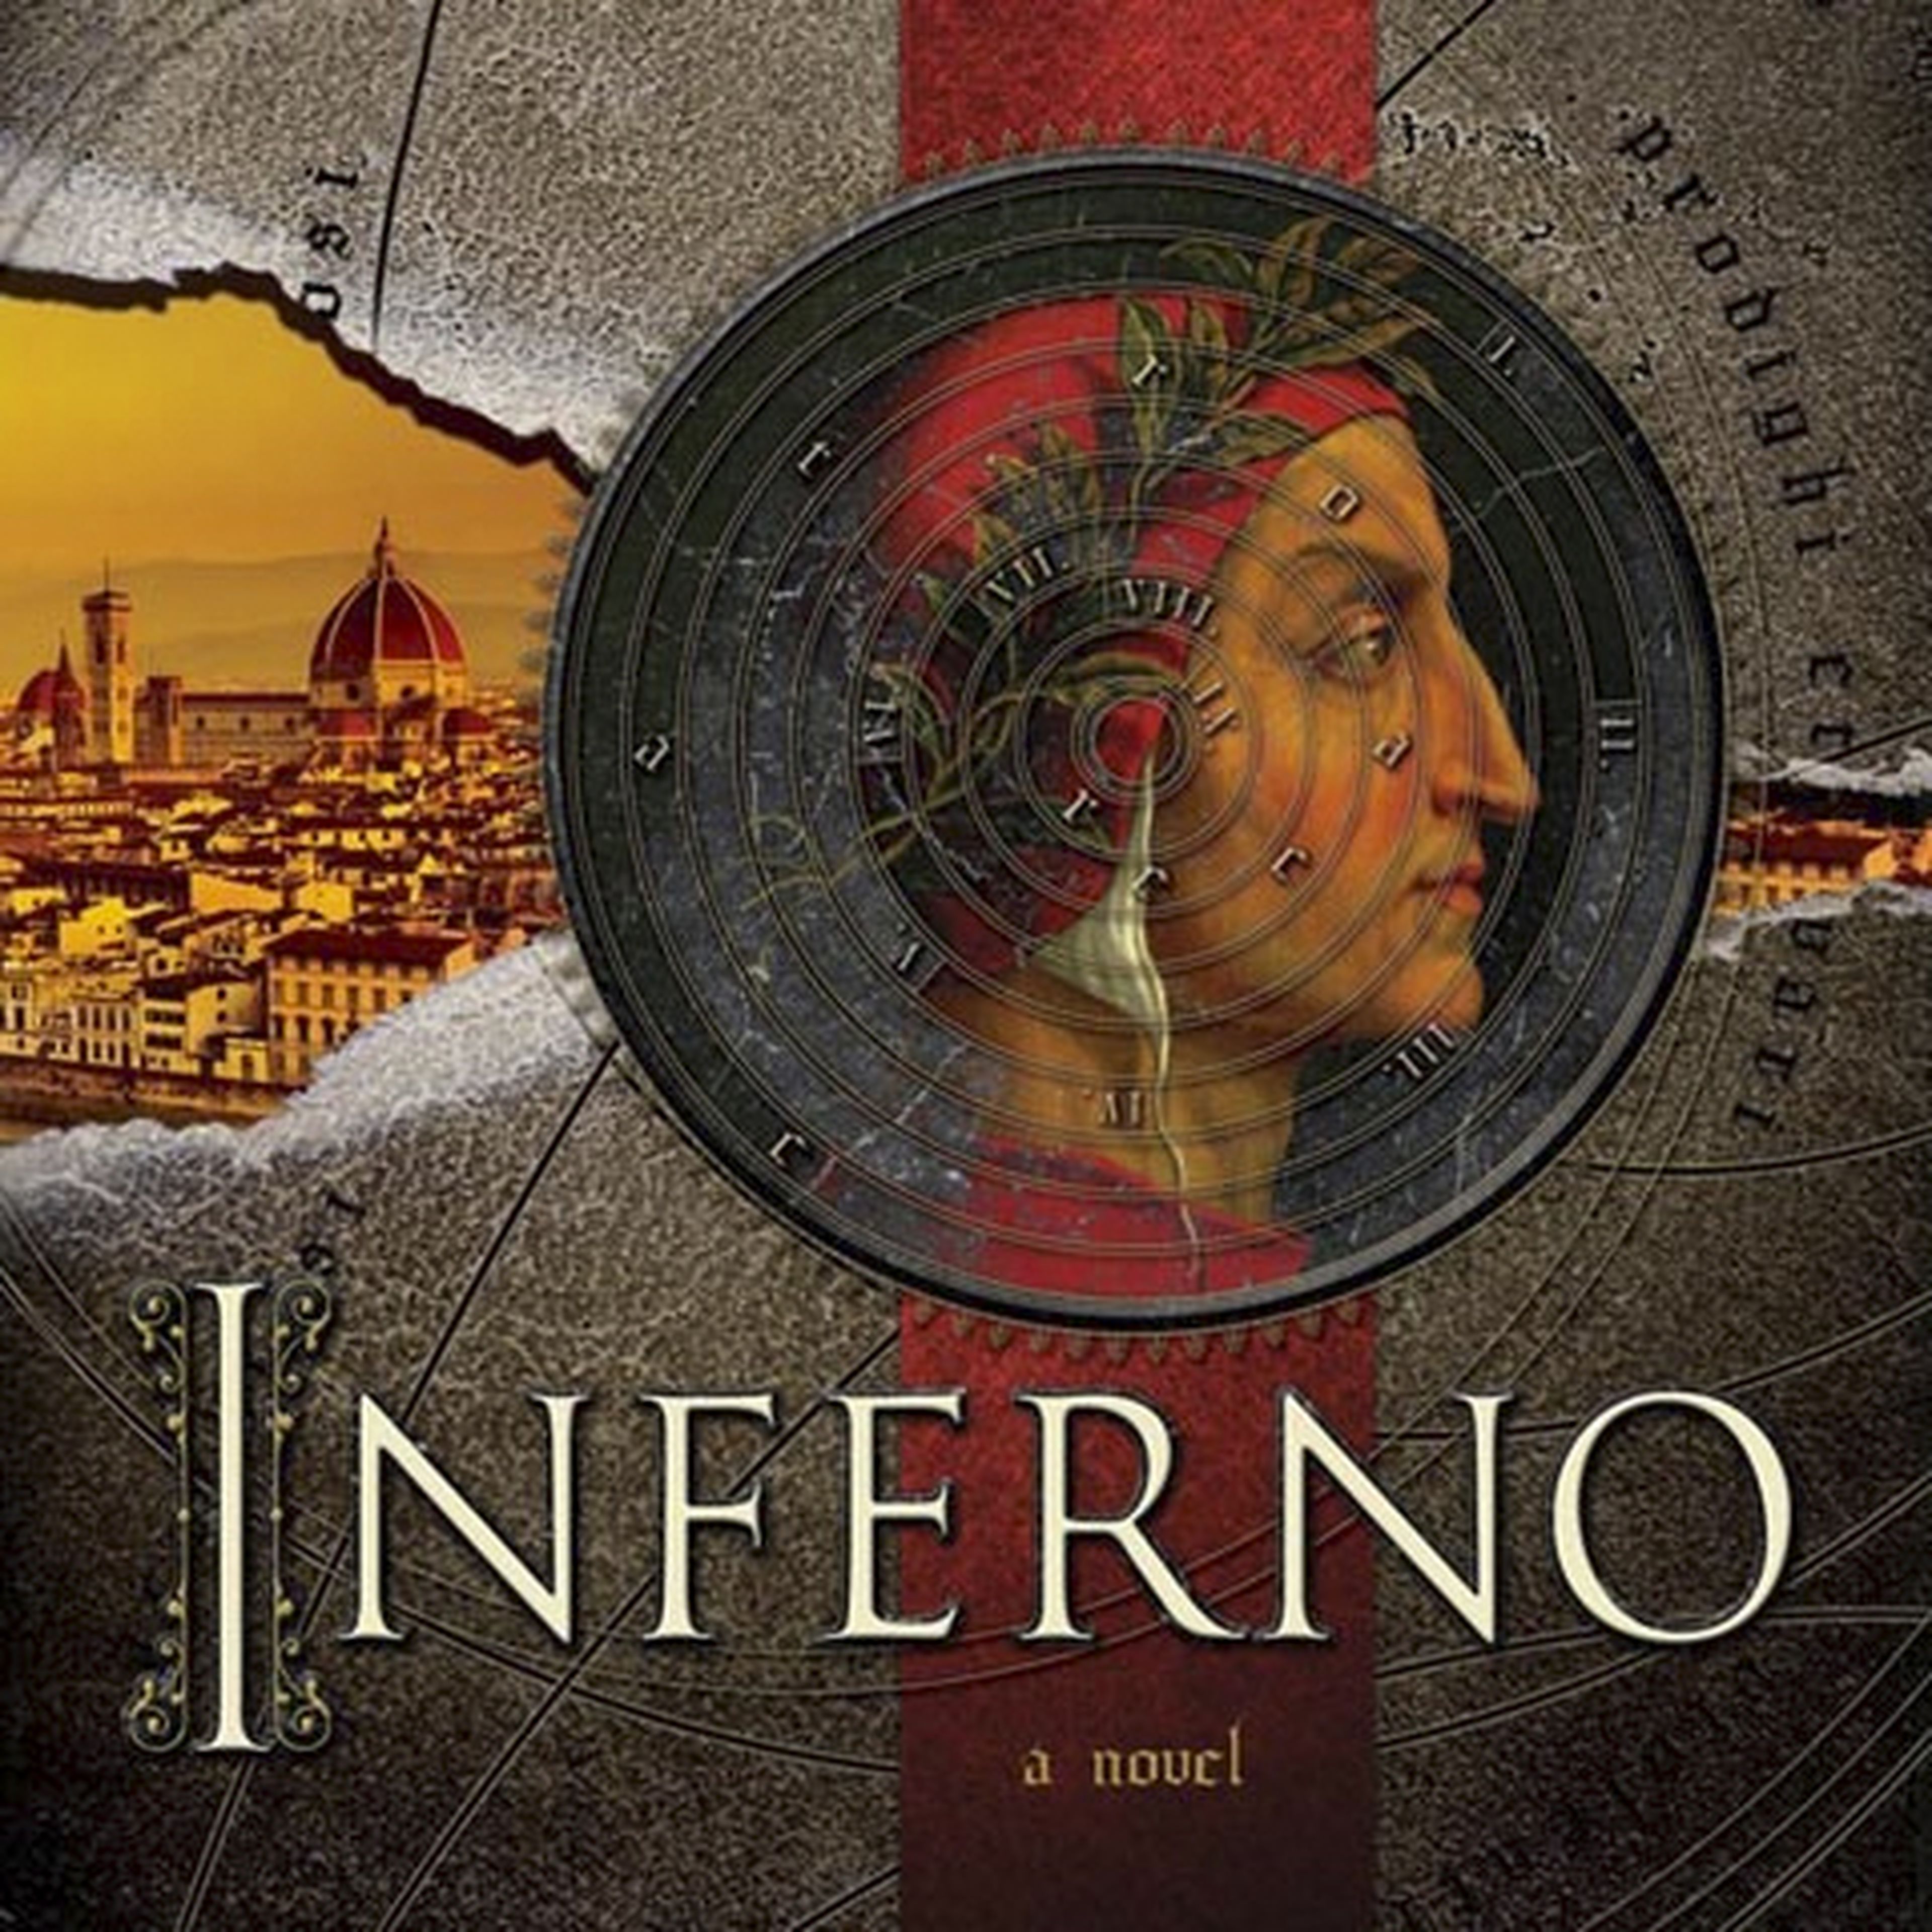 La tercera película de El código Da Vinci, Inferno, se retrasa a 2016